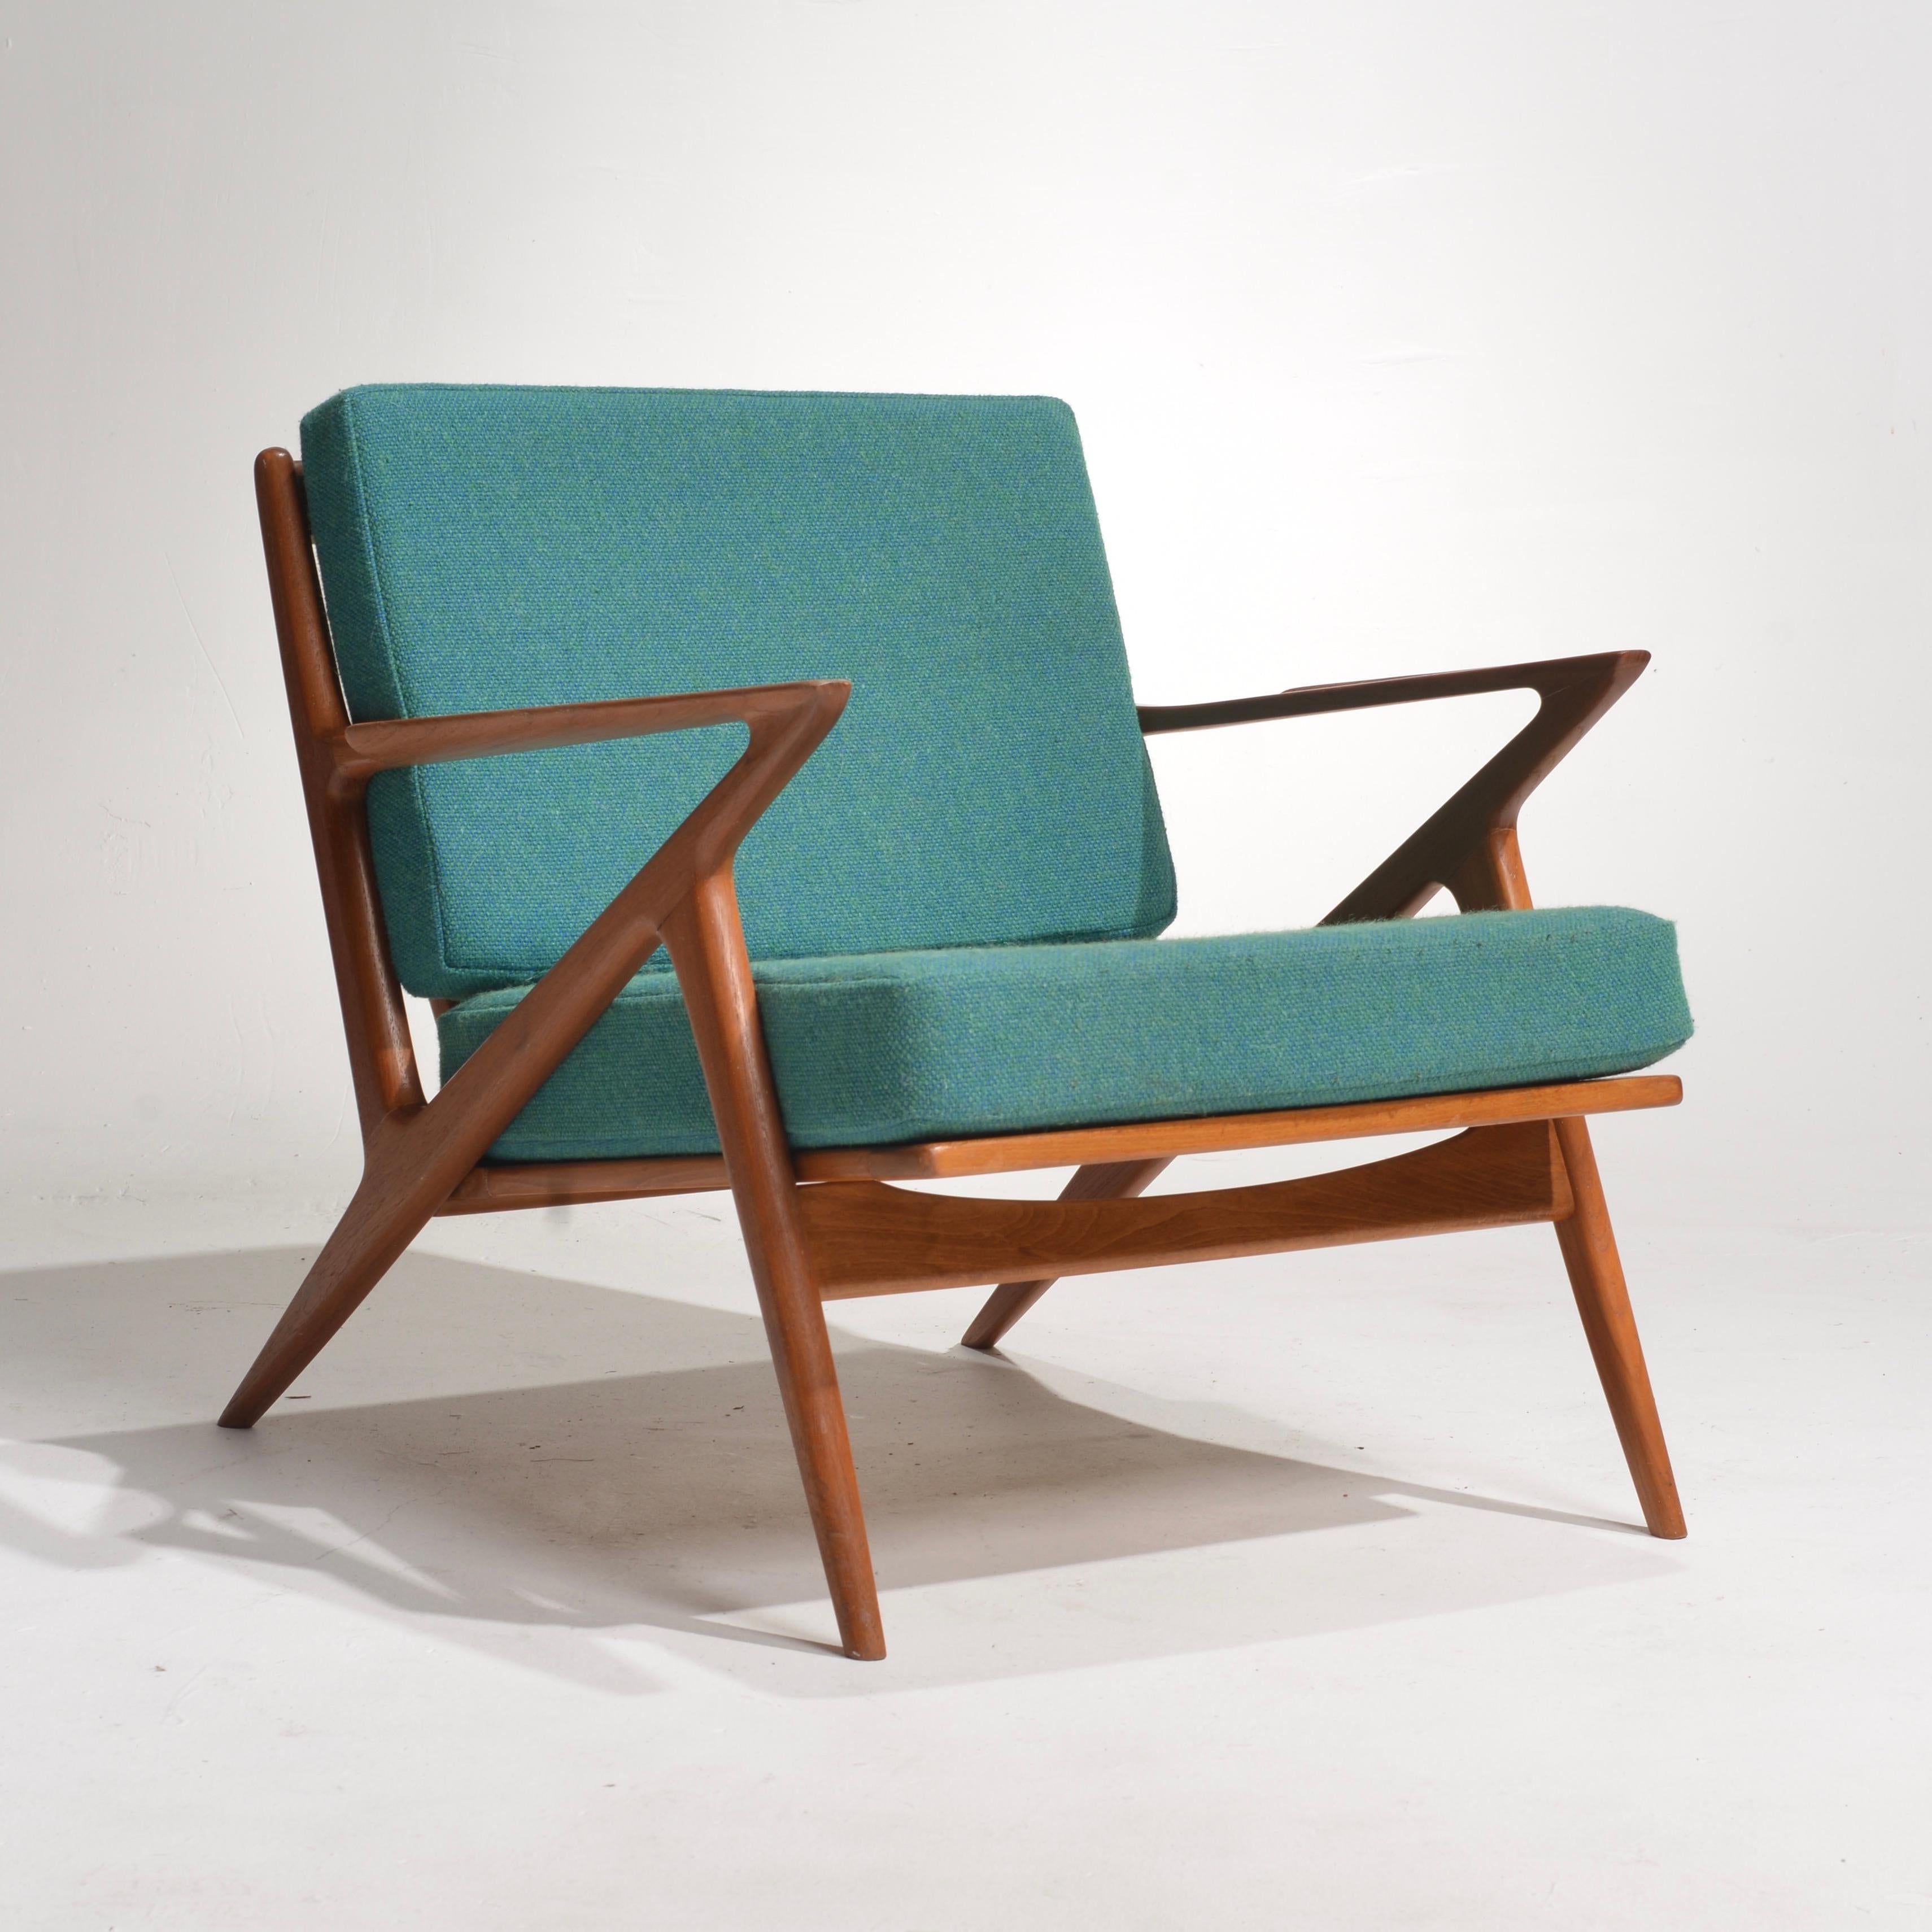 La chaise Z en teck conçue par Poul Jensen pour Selig présente un design classique inspiré du milieu du siècle, parfait pour tout style de maison moderne. Cette chaise est fabriquée en bois de teck massif, ce qui lui confère une chaleur et une